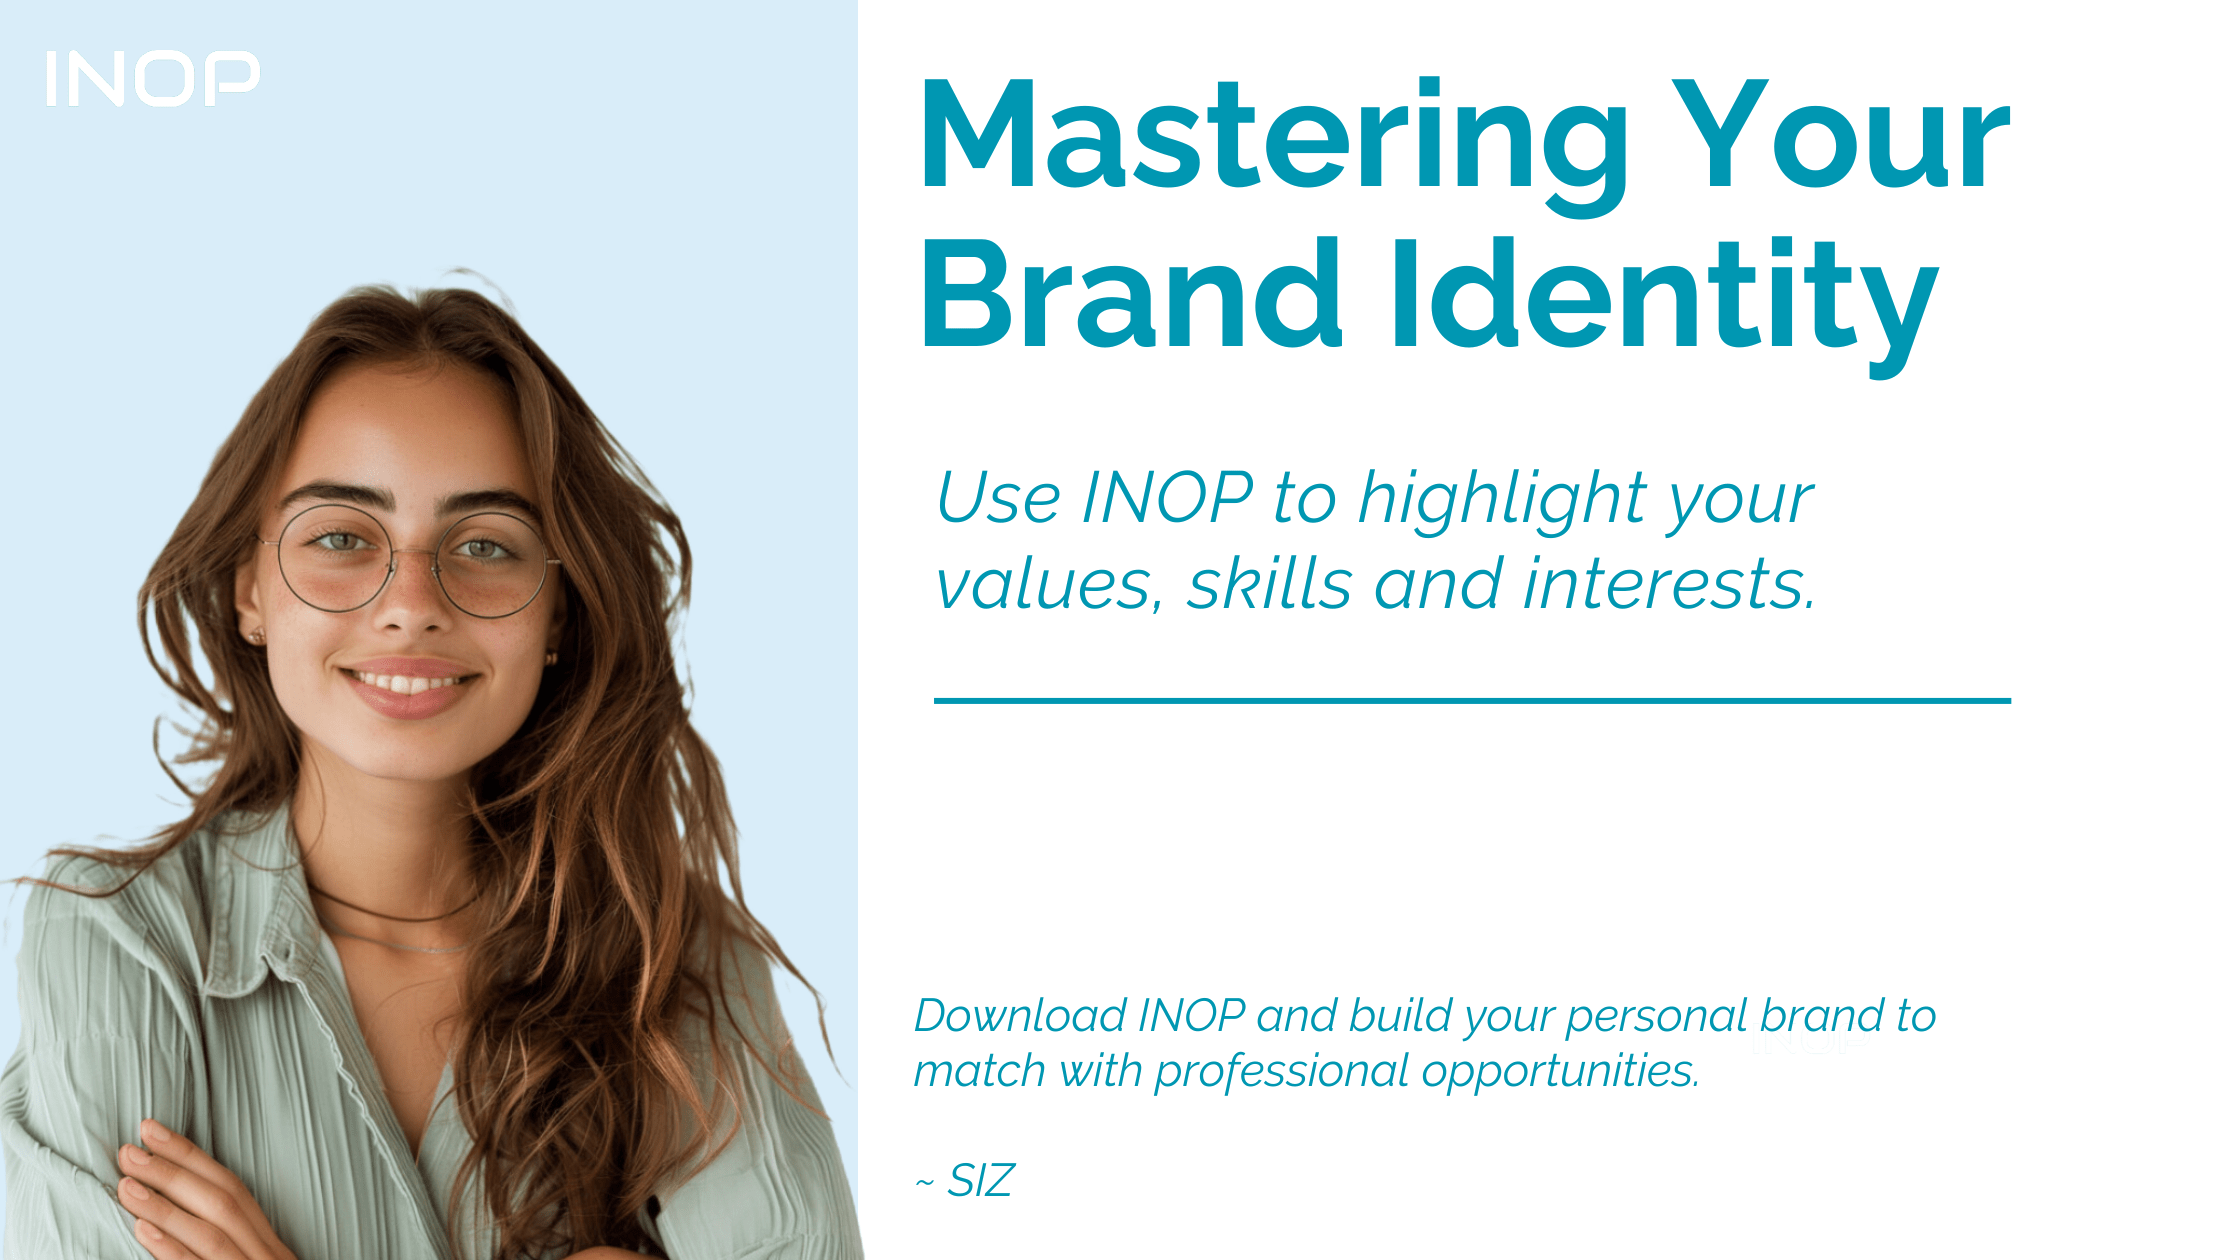 Siz presenting - master your brand identity